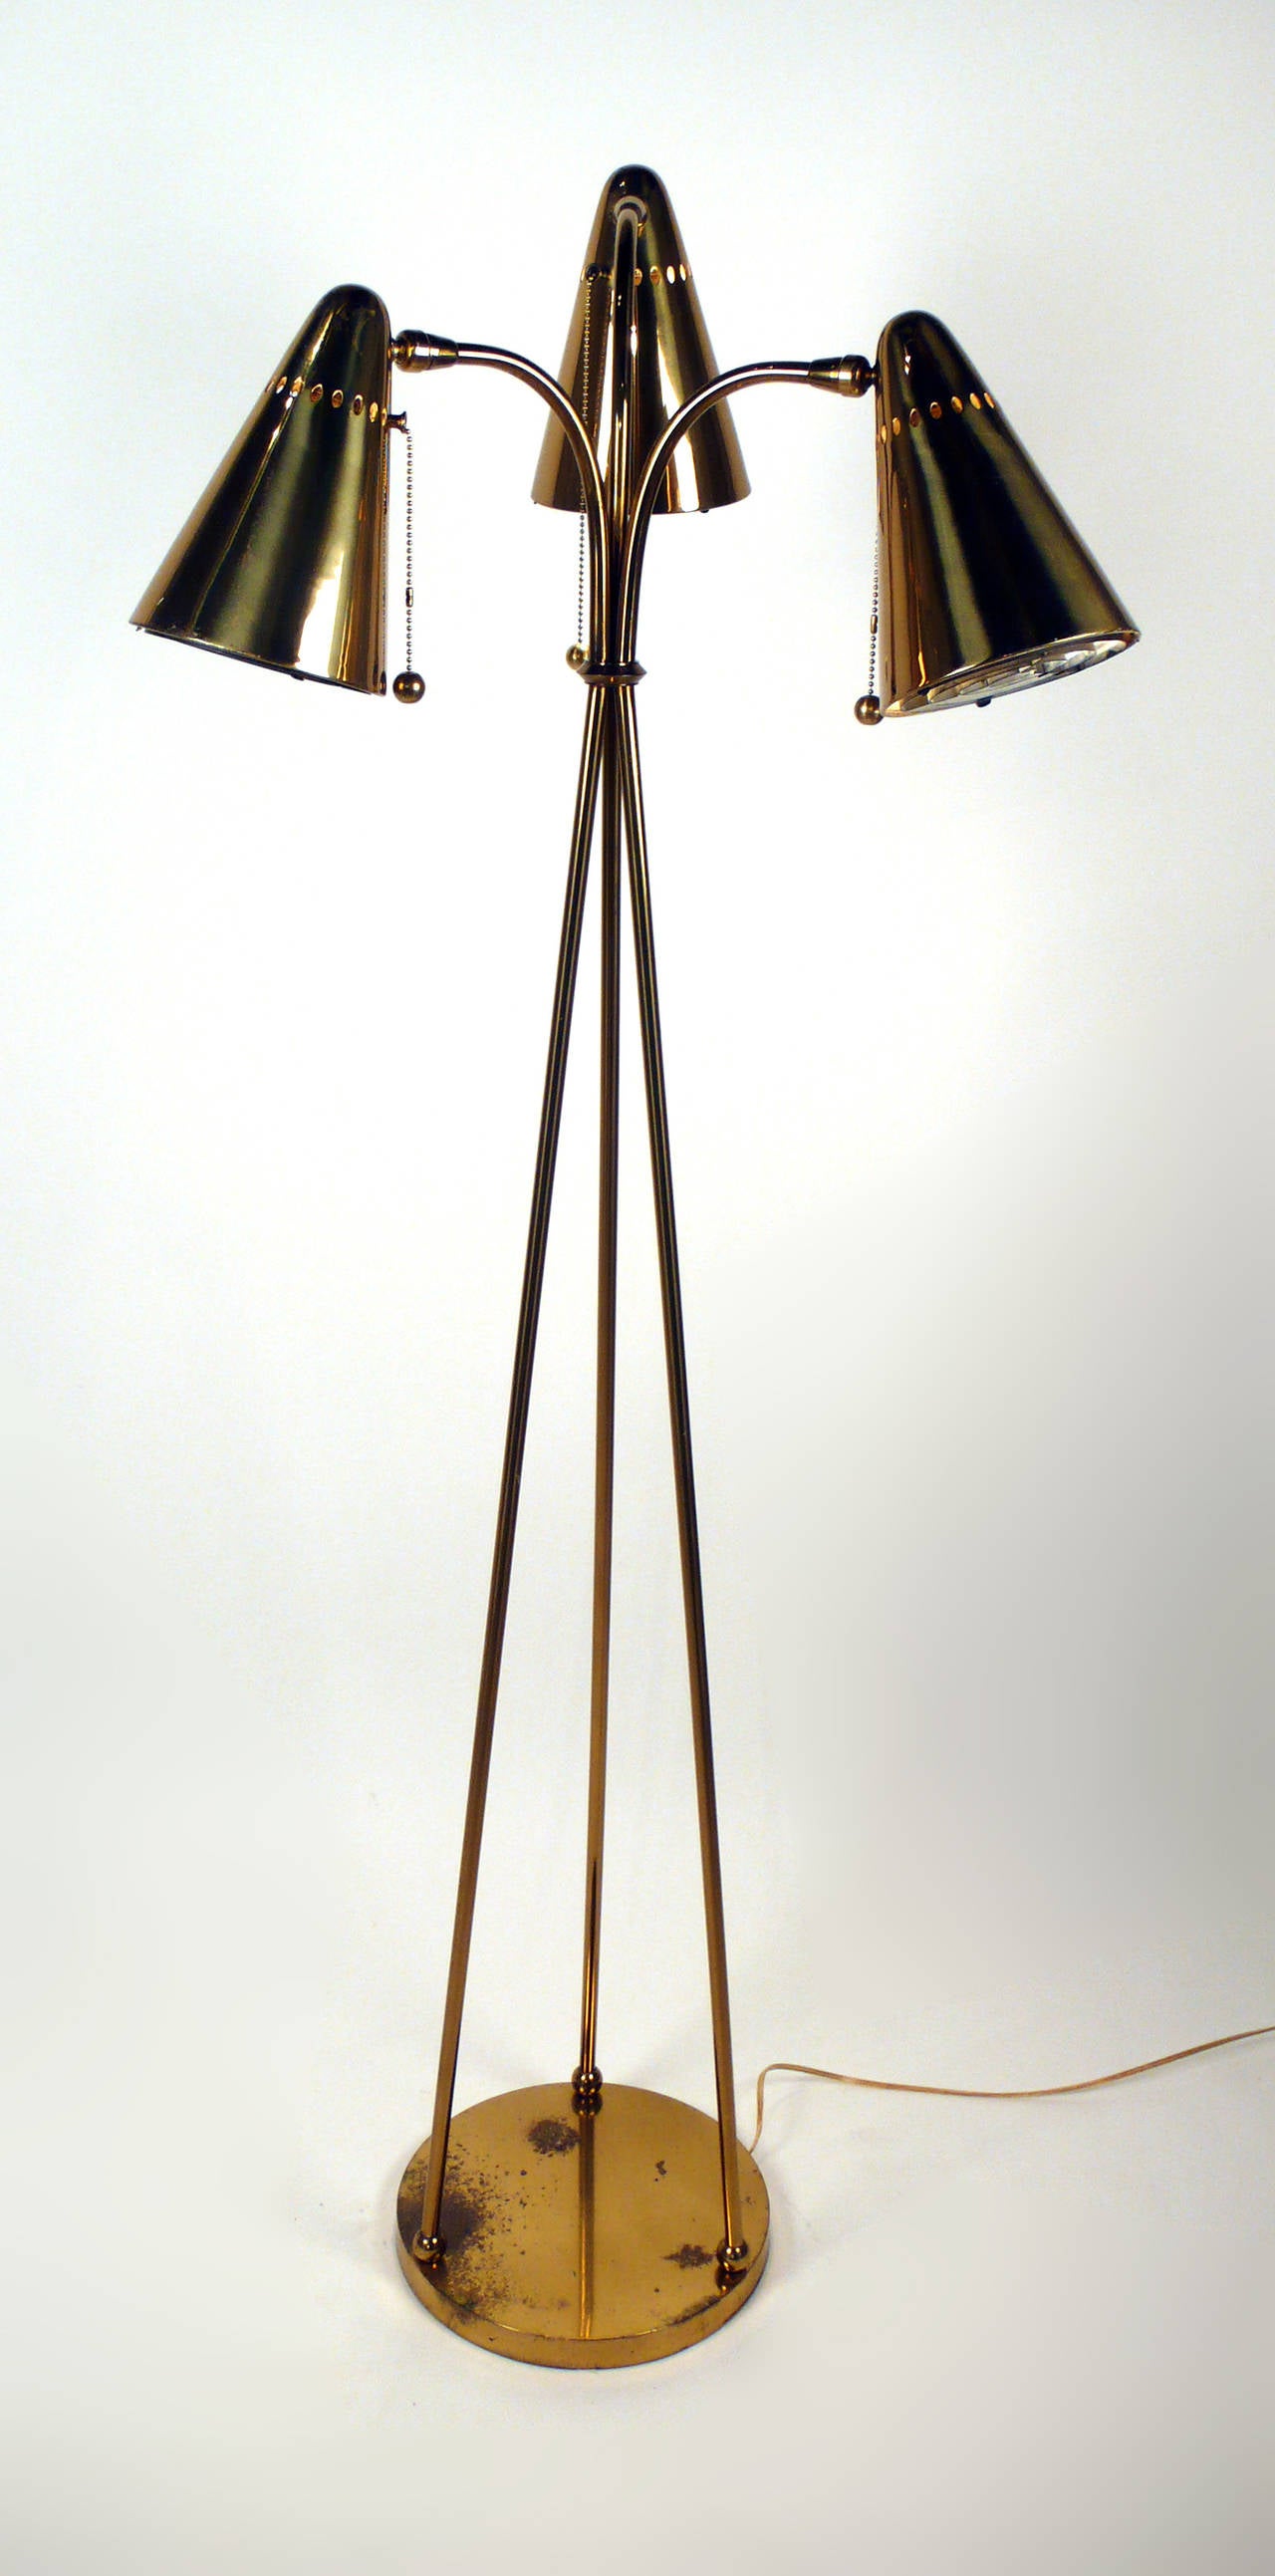 Ungewöhnliche Stehlampe mit Dreibein aus den 1950er Jahren. Besteht aus drei konischen perforierten Messingschirmen mit Zugkettenfassungen und dekorativen Messingkugeln. Professionell neu verkabelt. Hat Ähnlichkeiten mit Leuchten von Gerald